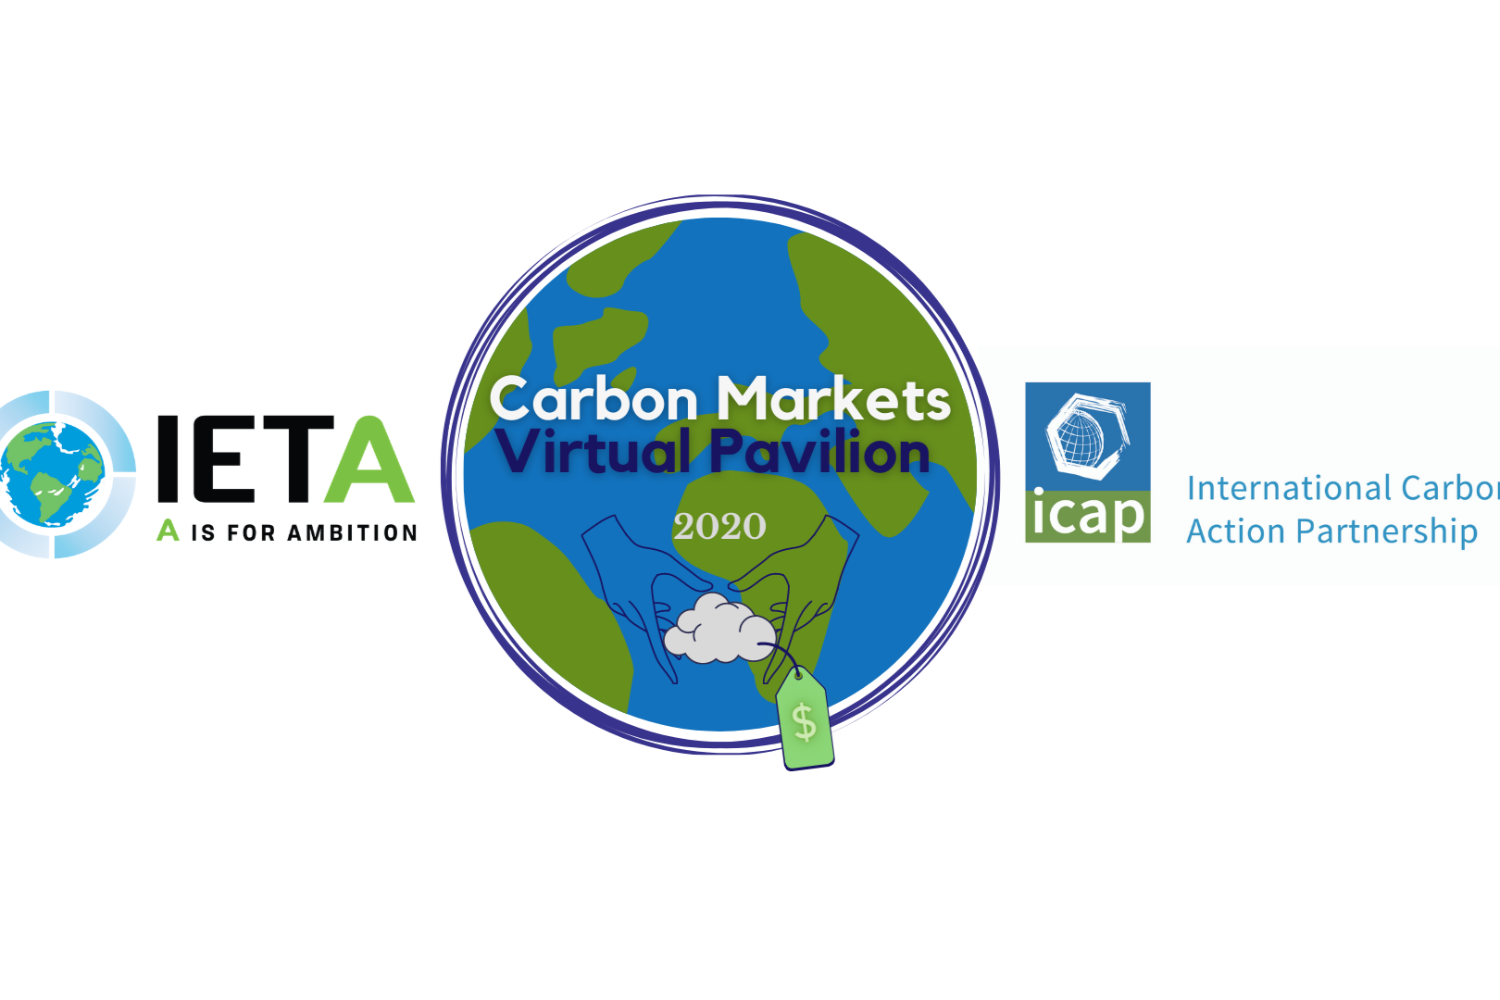 IETA/ICAP Carbon Markets Virtual Pavilion